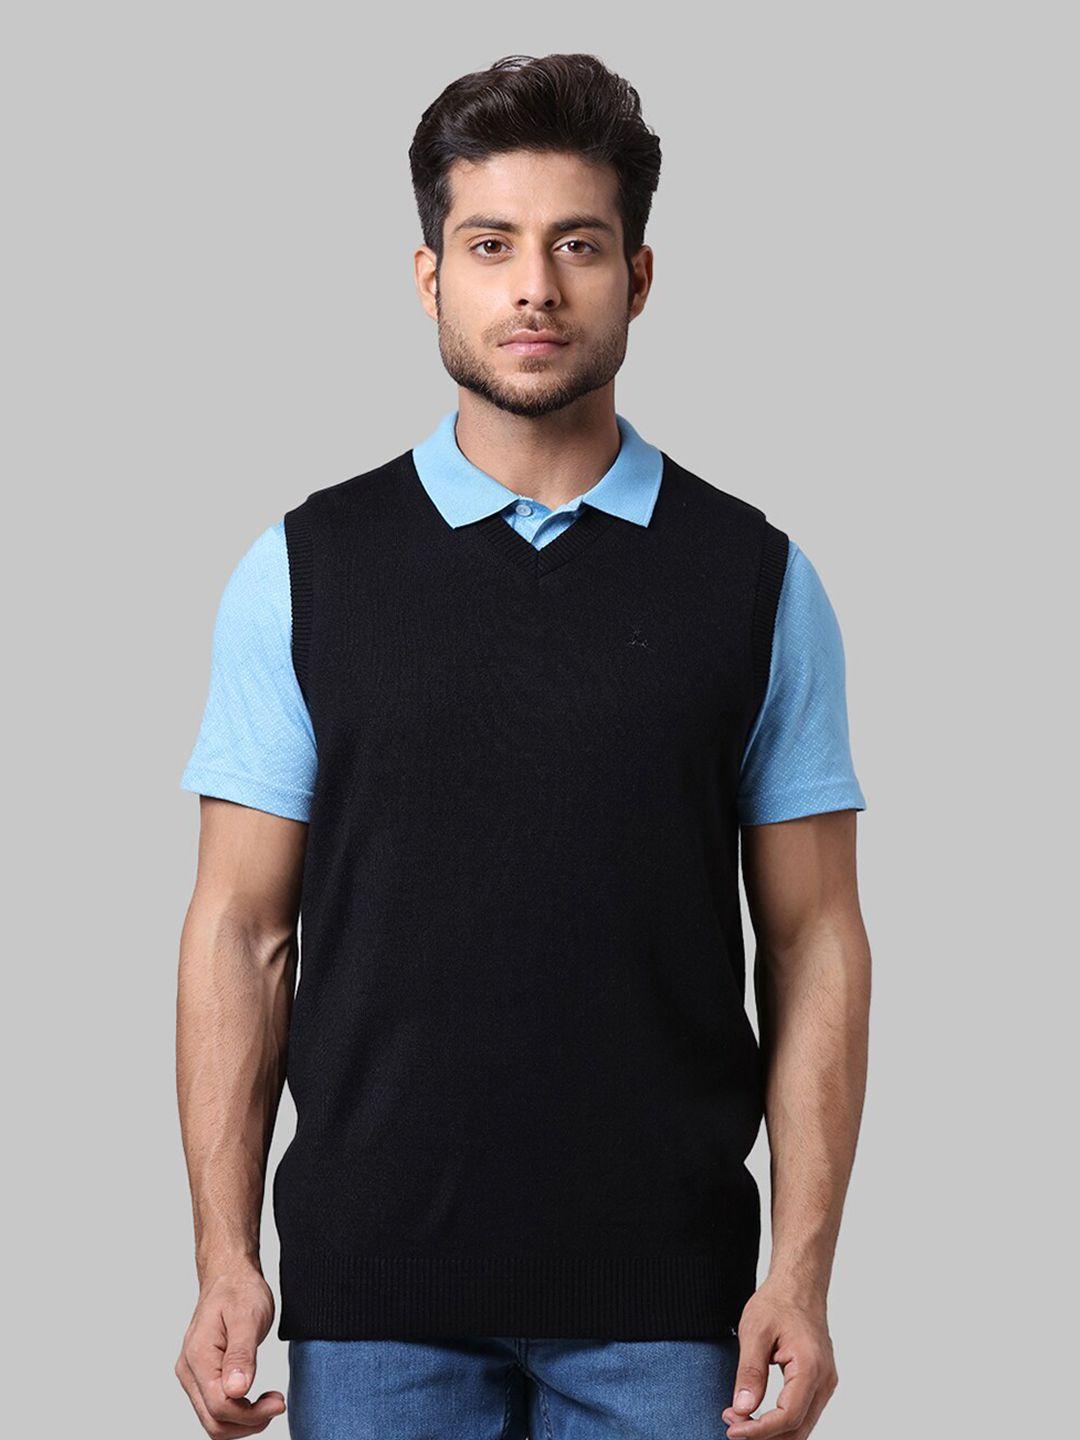 parx-men-black-sweater-vest